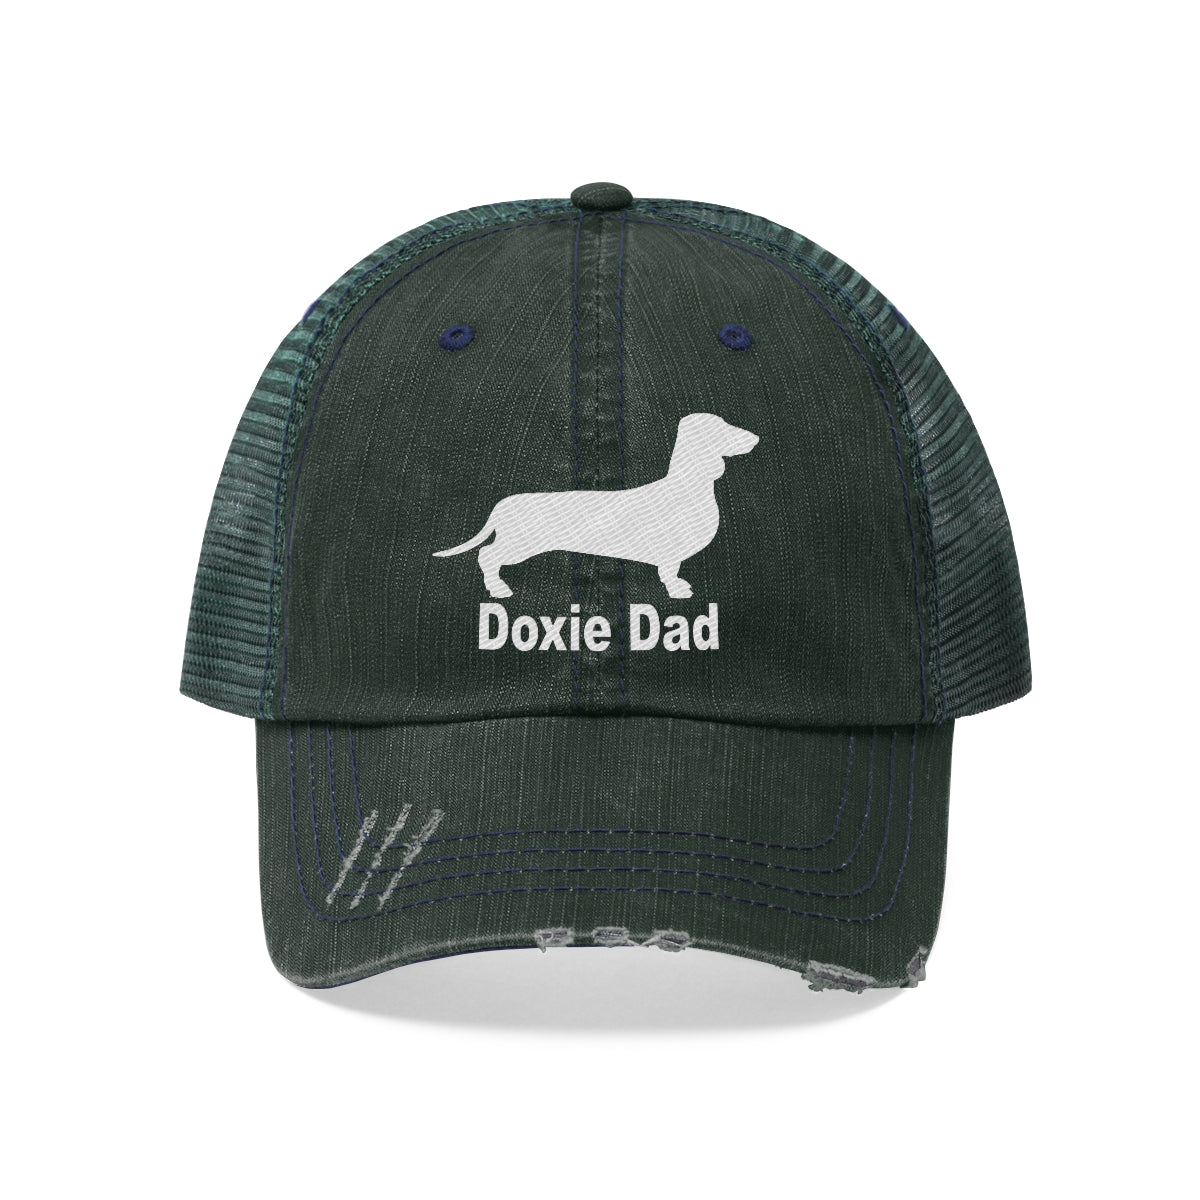 Doxie Dad - Unisex Trucker Hat